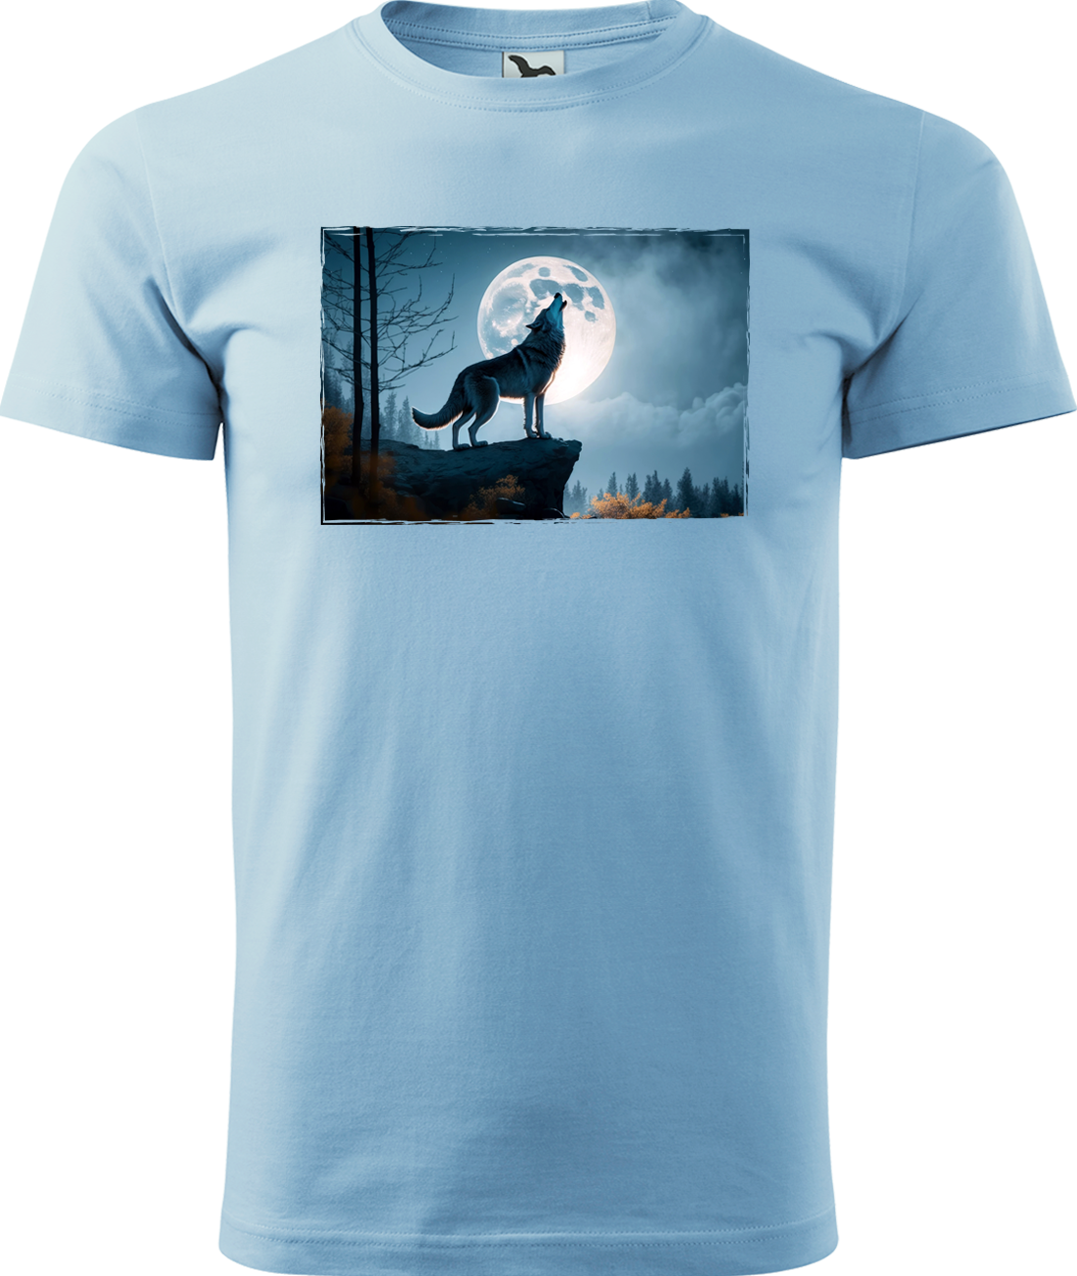 Pánské tričko s vlkem - Vyjící vlk Velikost: M, Barva: Nebesky modrá (15)